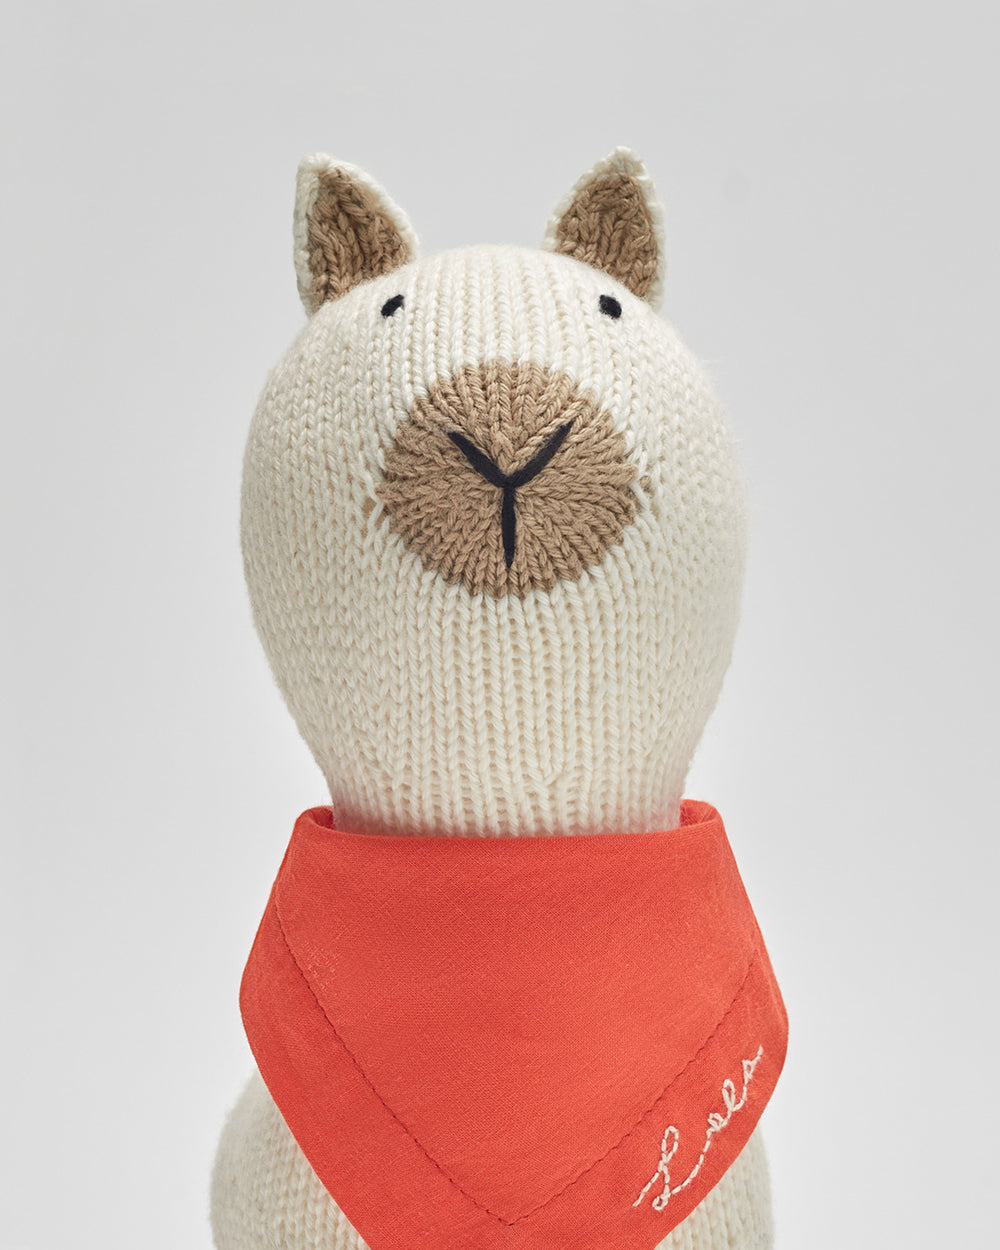 Stuffed alpaca with a scarf around its neck